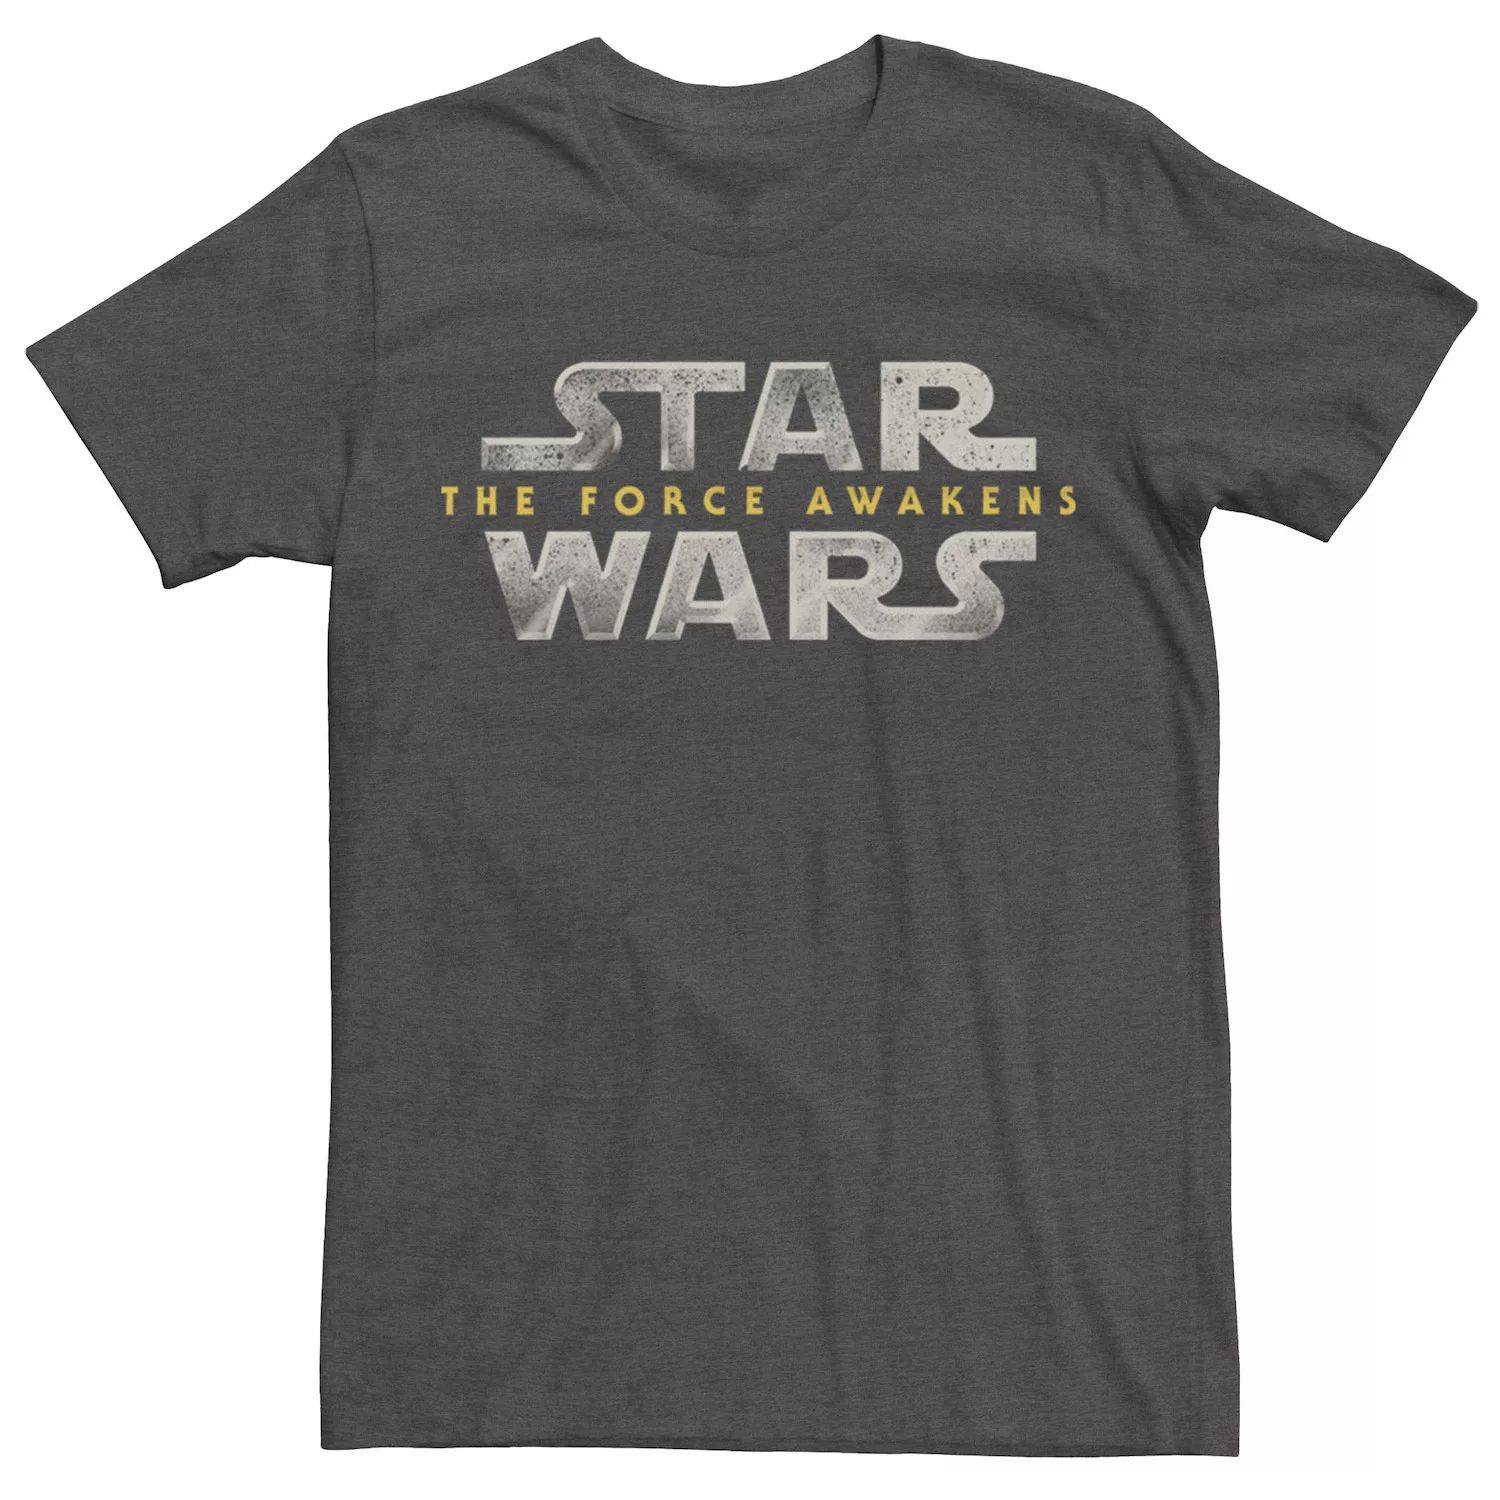 цена Мужская футболка с логотипом The Force Awakens Title Star Wars